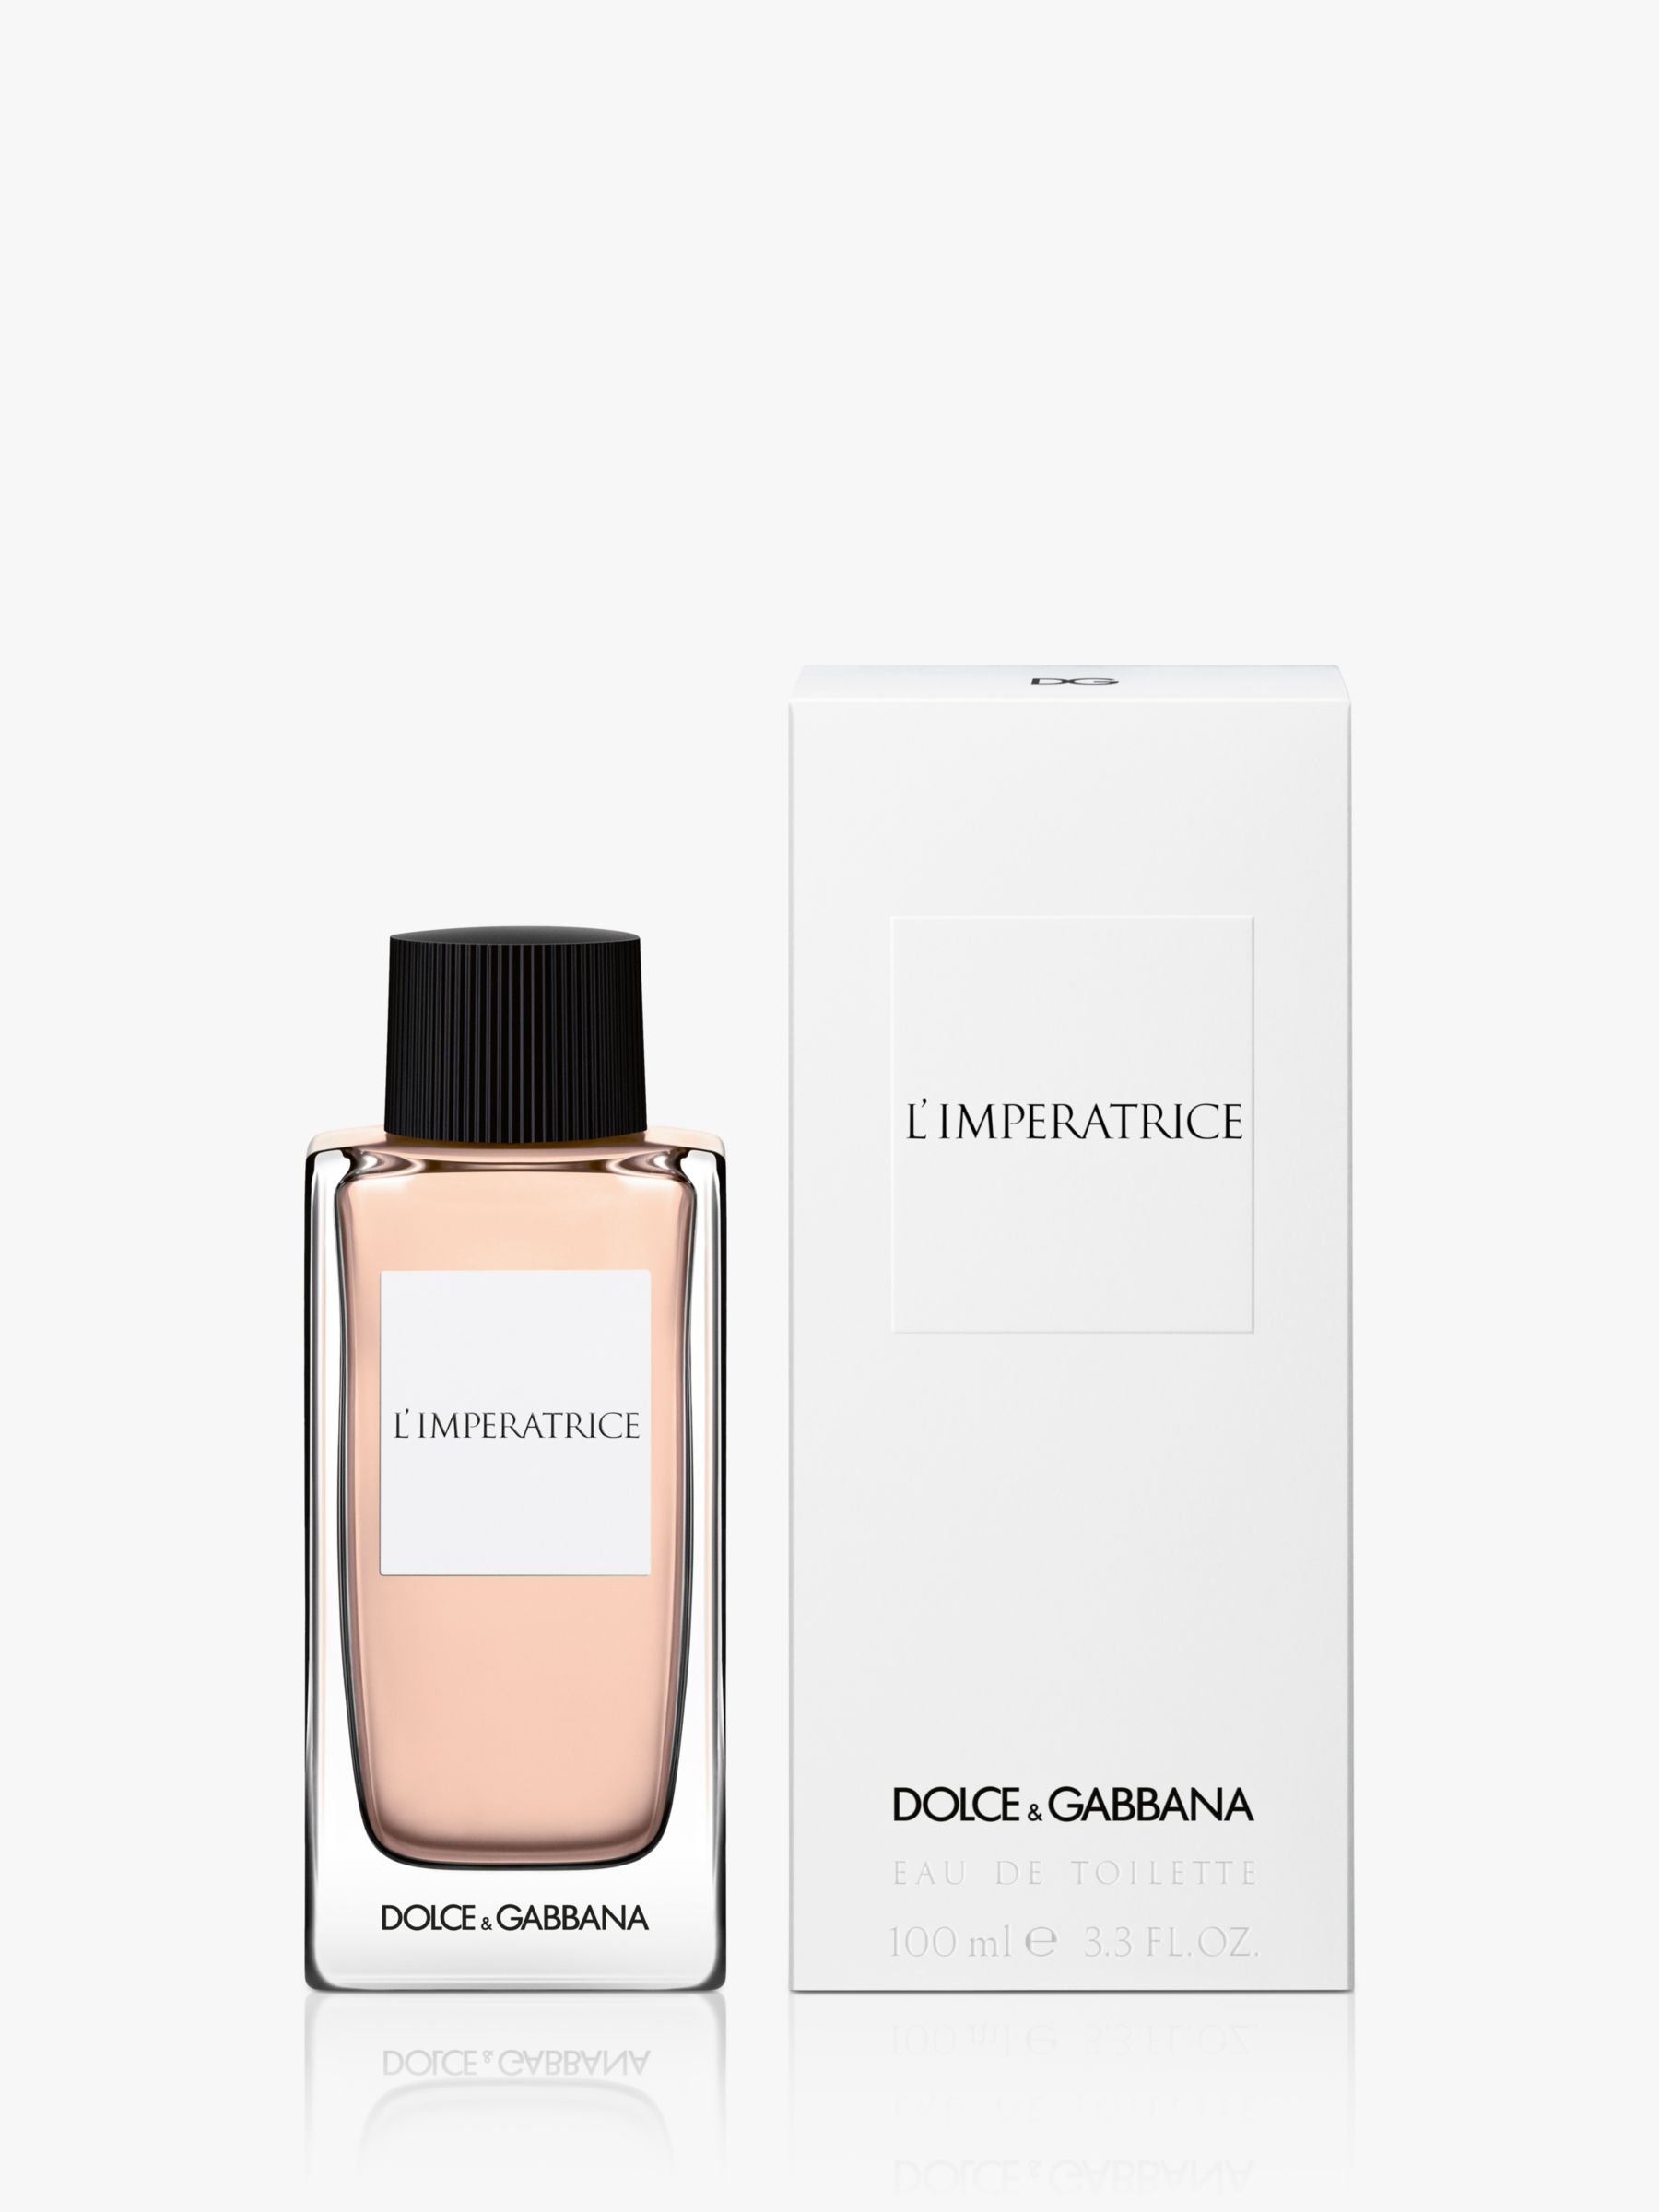 Dolce & Gabbana L'Imperatrice Eau de Toilette,100ml 2